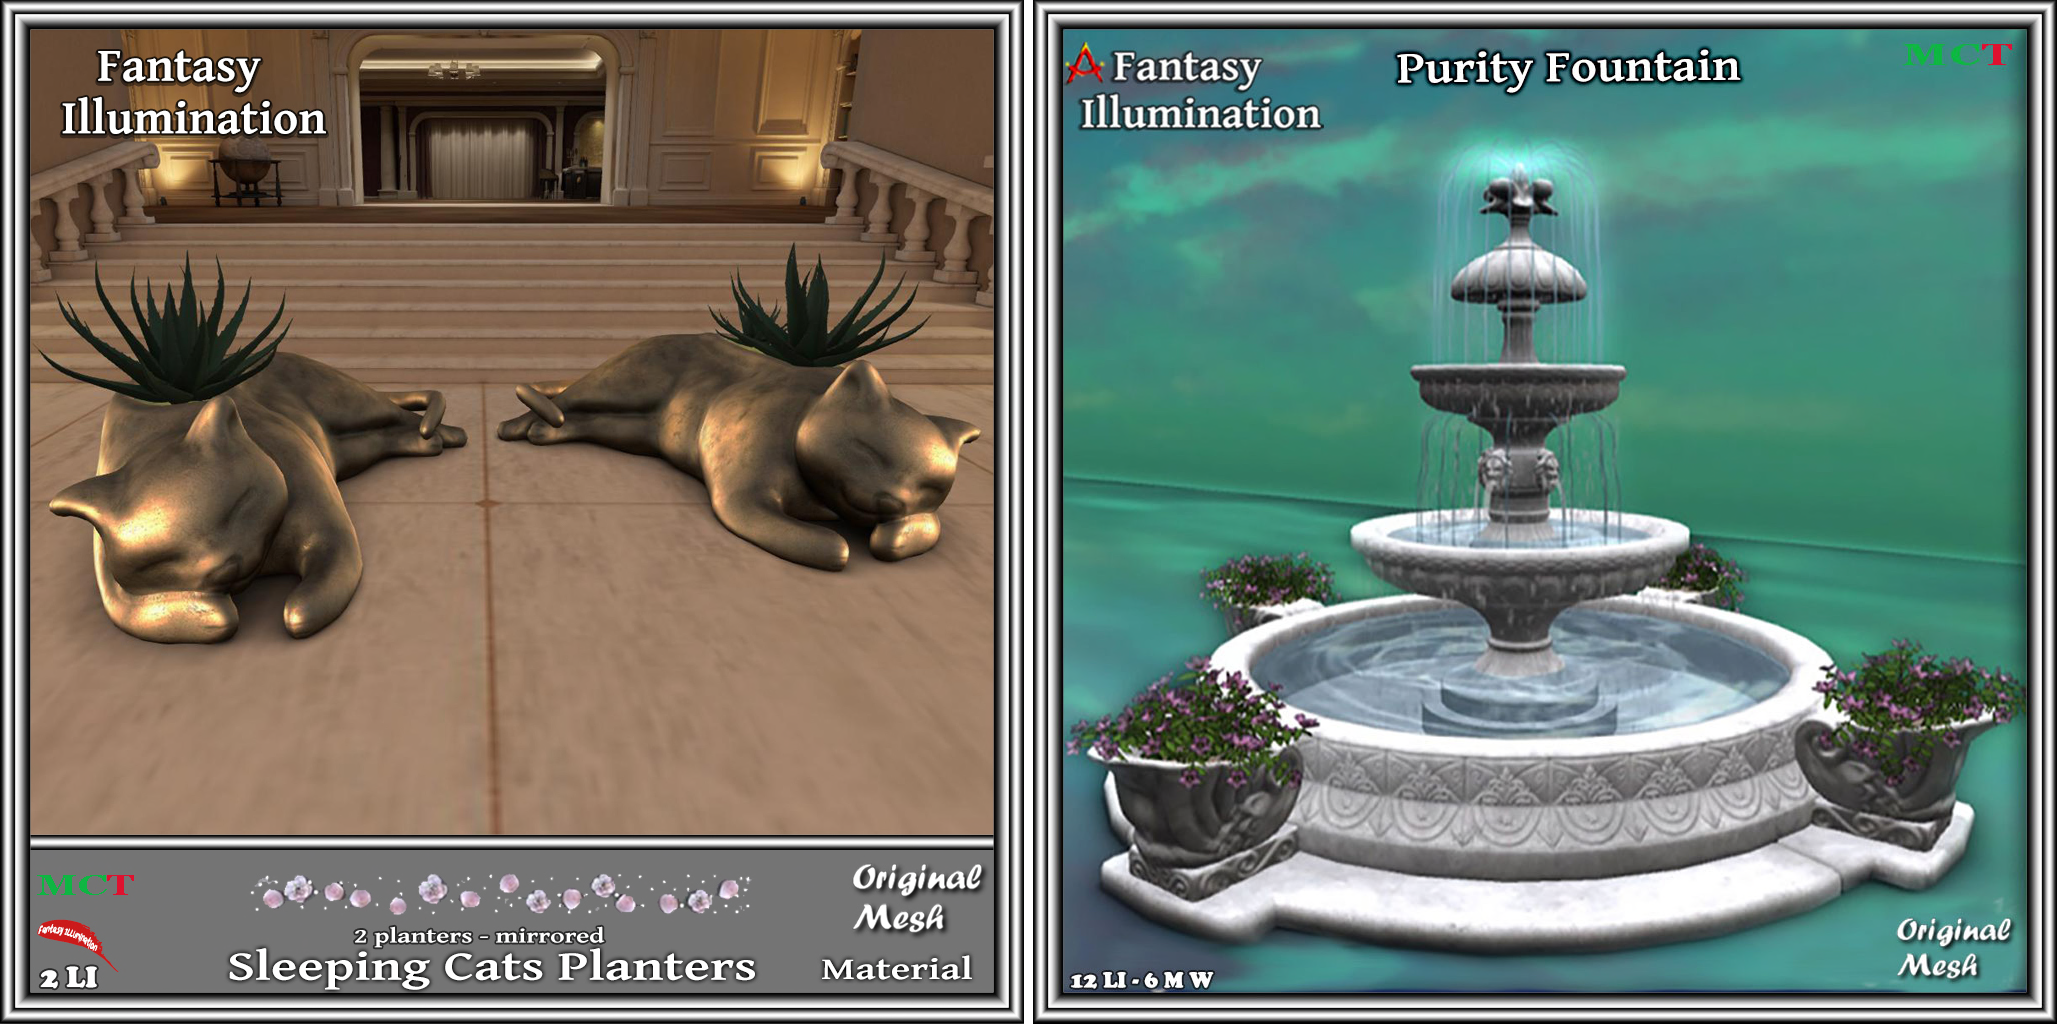 Fantasy Illumination – Sleeping Cats Planters & Purity Fountain